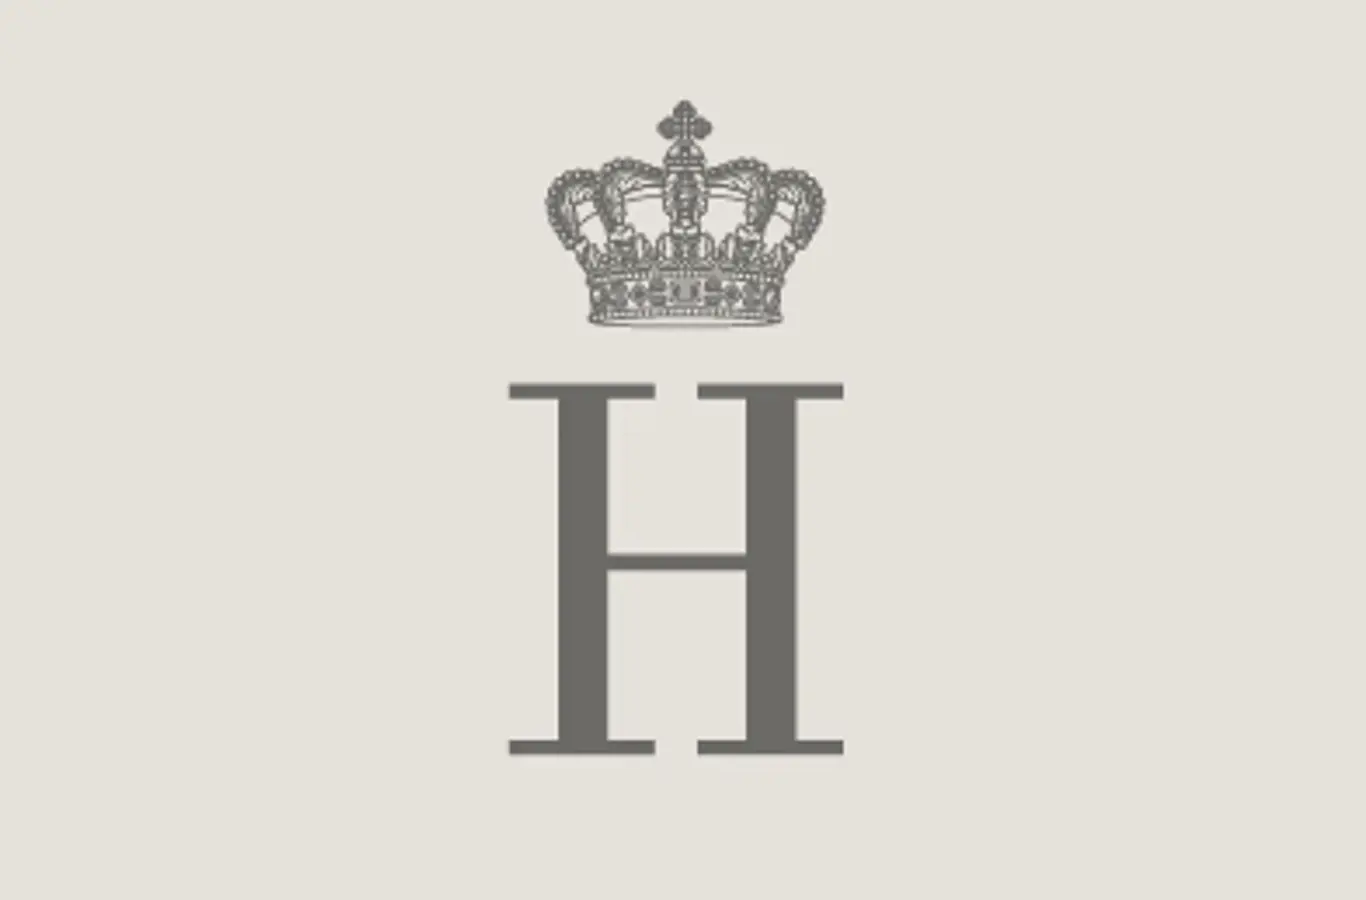 Hans Kongelige Højhed Prinsgemalens monogram